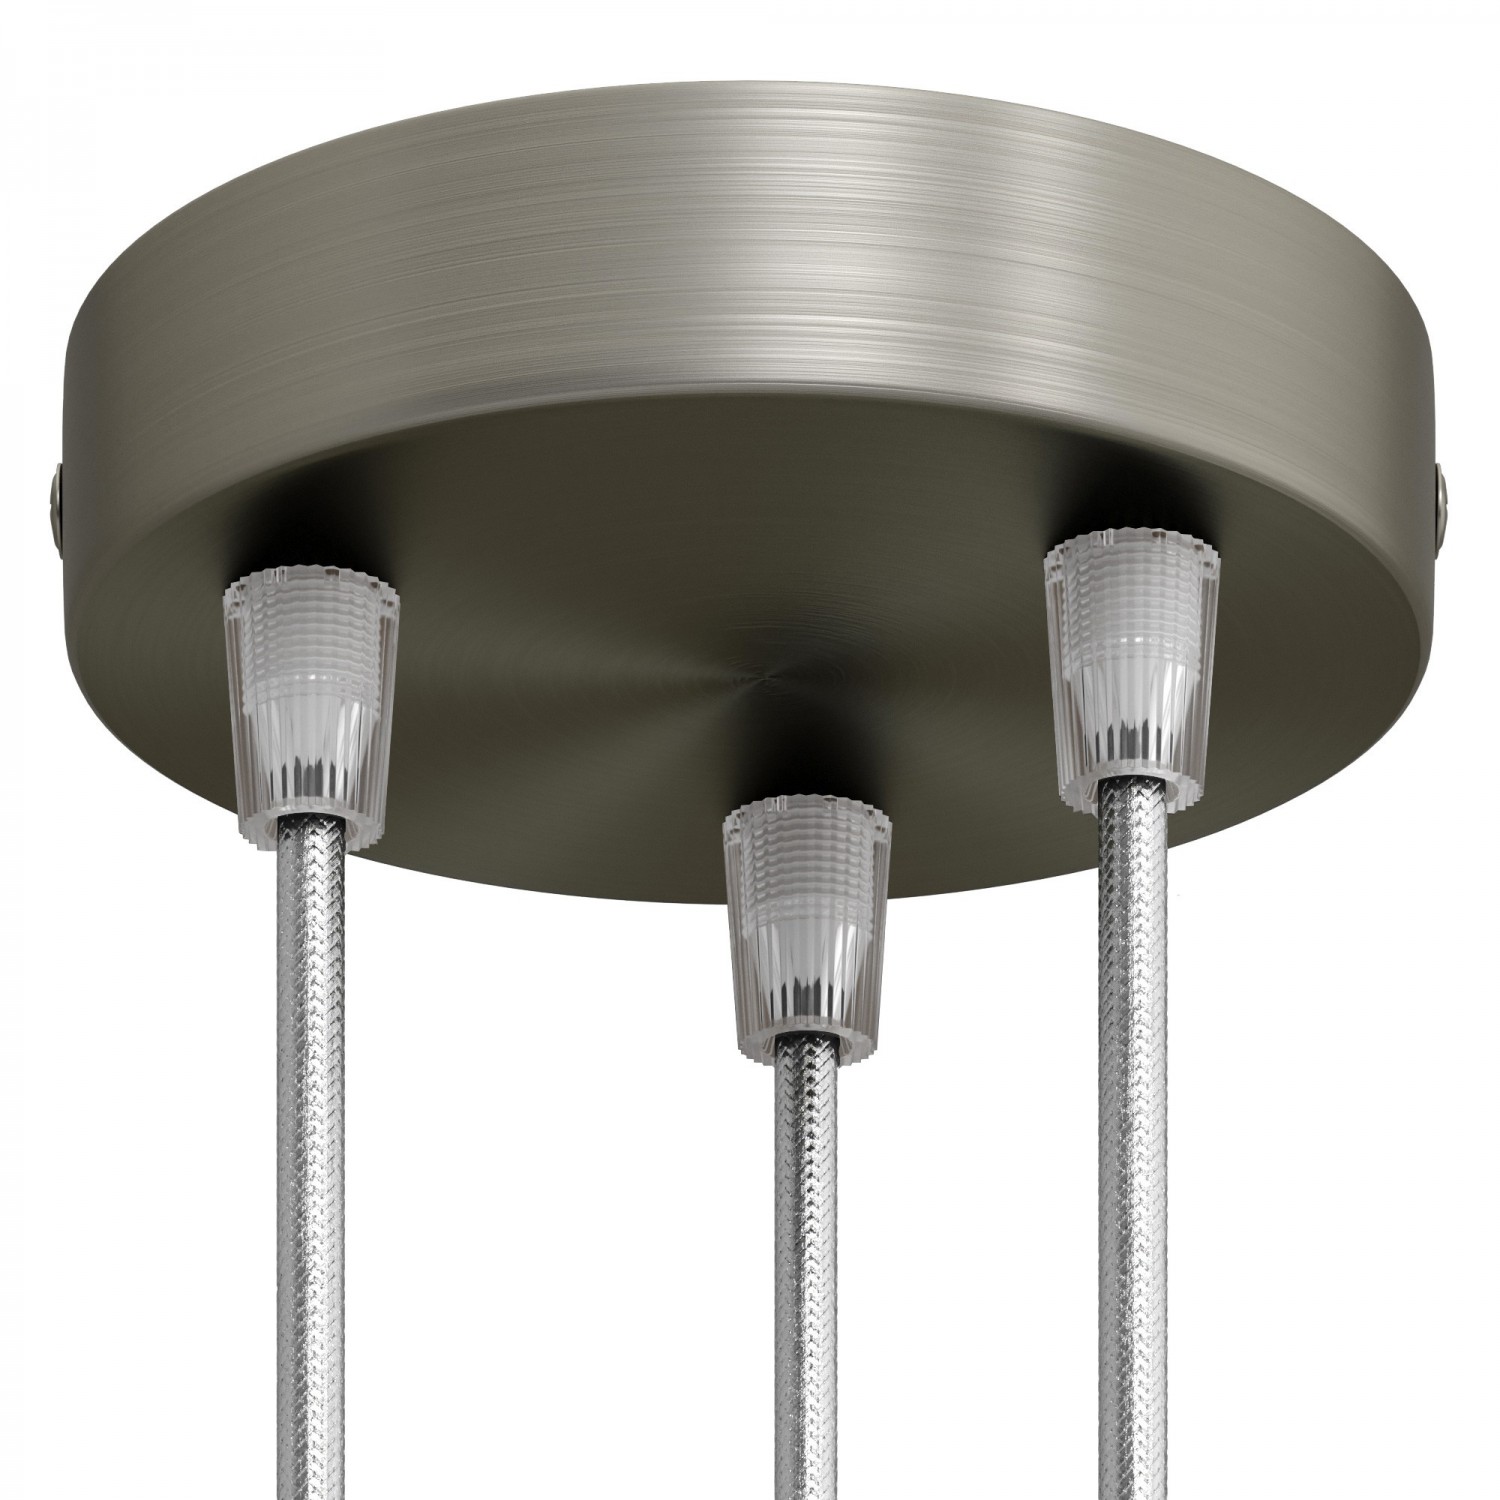 Zylindrischer 3-Loch-Lampenbaldachin Kit aus Metall